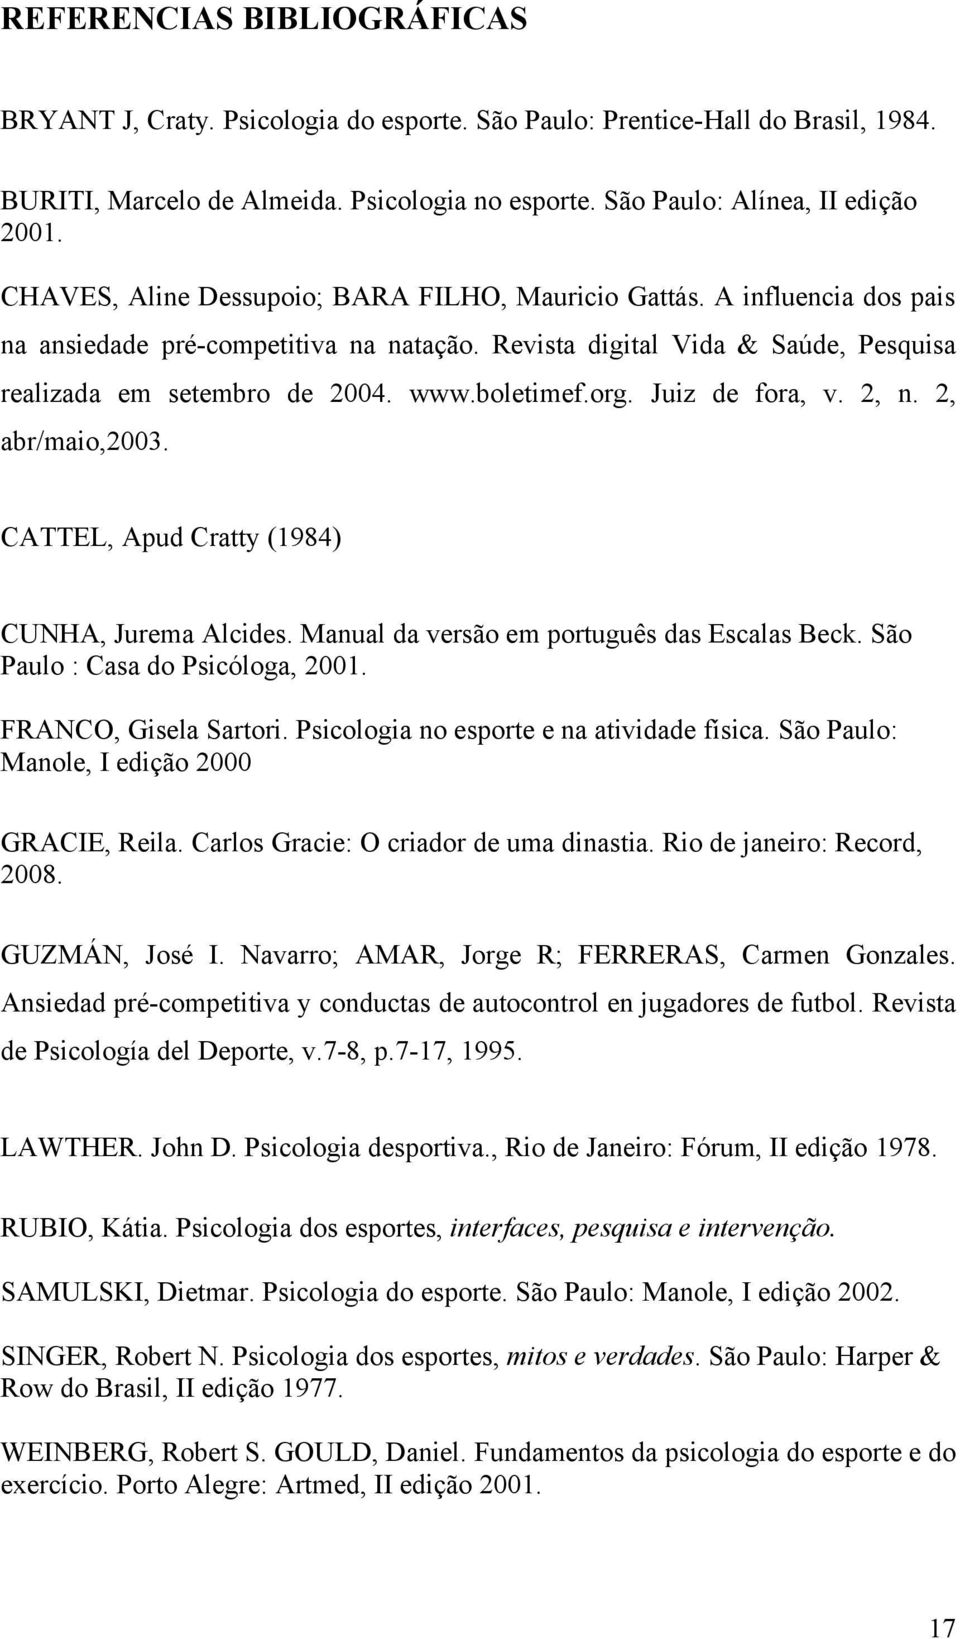 boletimef.org. Juiz de fora, v. 2, n. 2, abr/maio,2003. CATTEL, Apud Cratty (1984) CUNHA, Jurema Alcides. Manual da versão em português das Escalas Beck. São Paulo : Casa do Psicóloga, 2001.